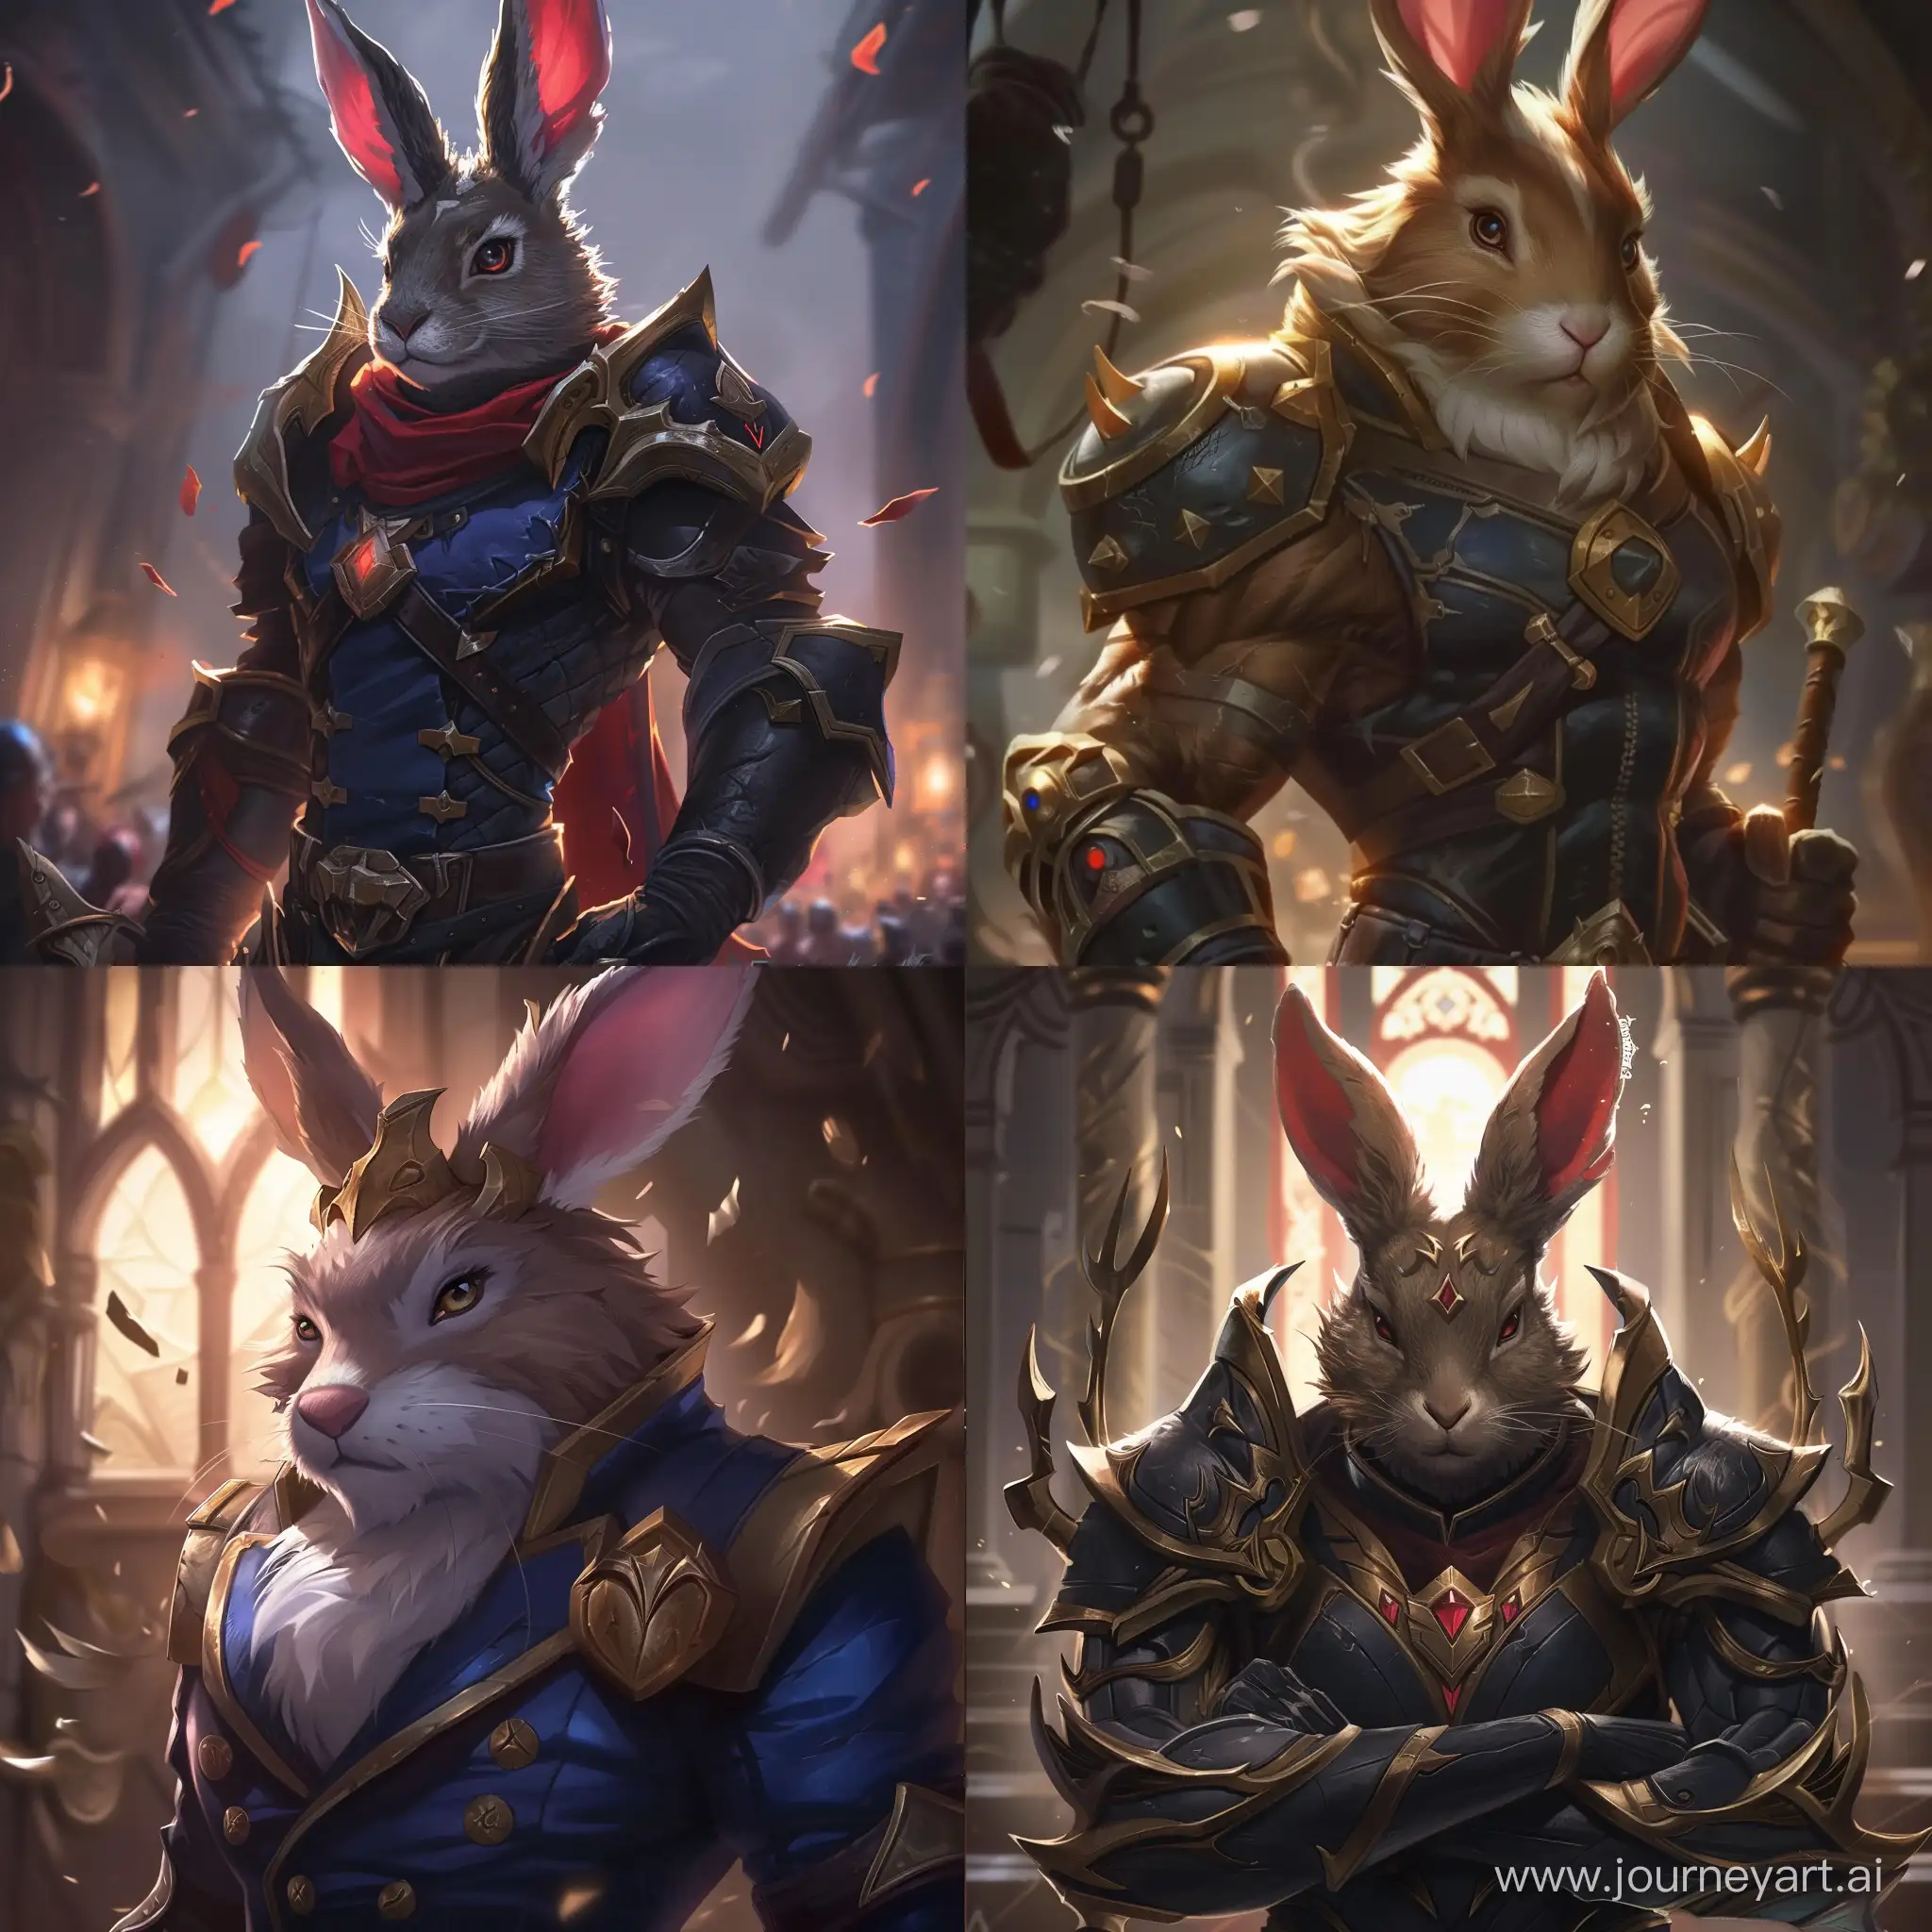 Garen from league of Legends but he has a rabbit's head